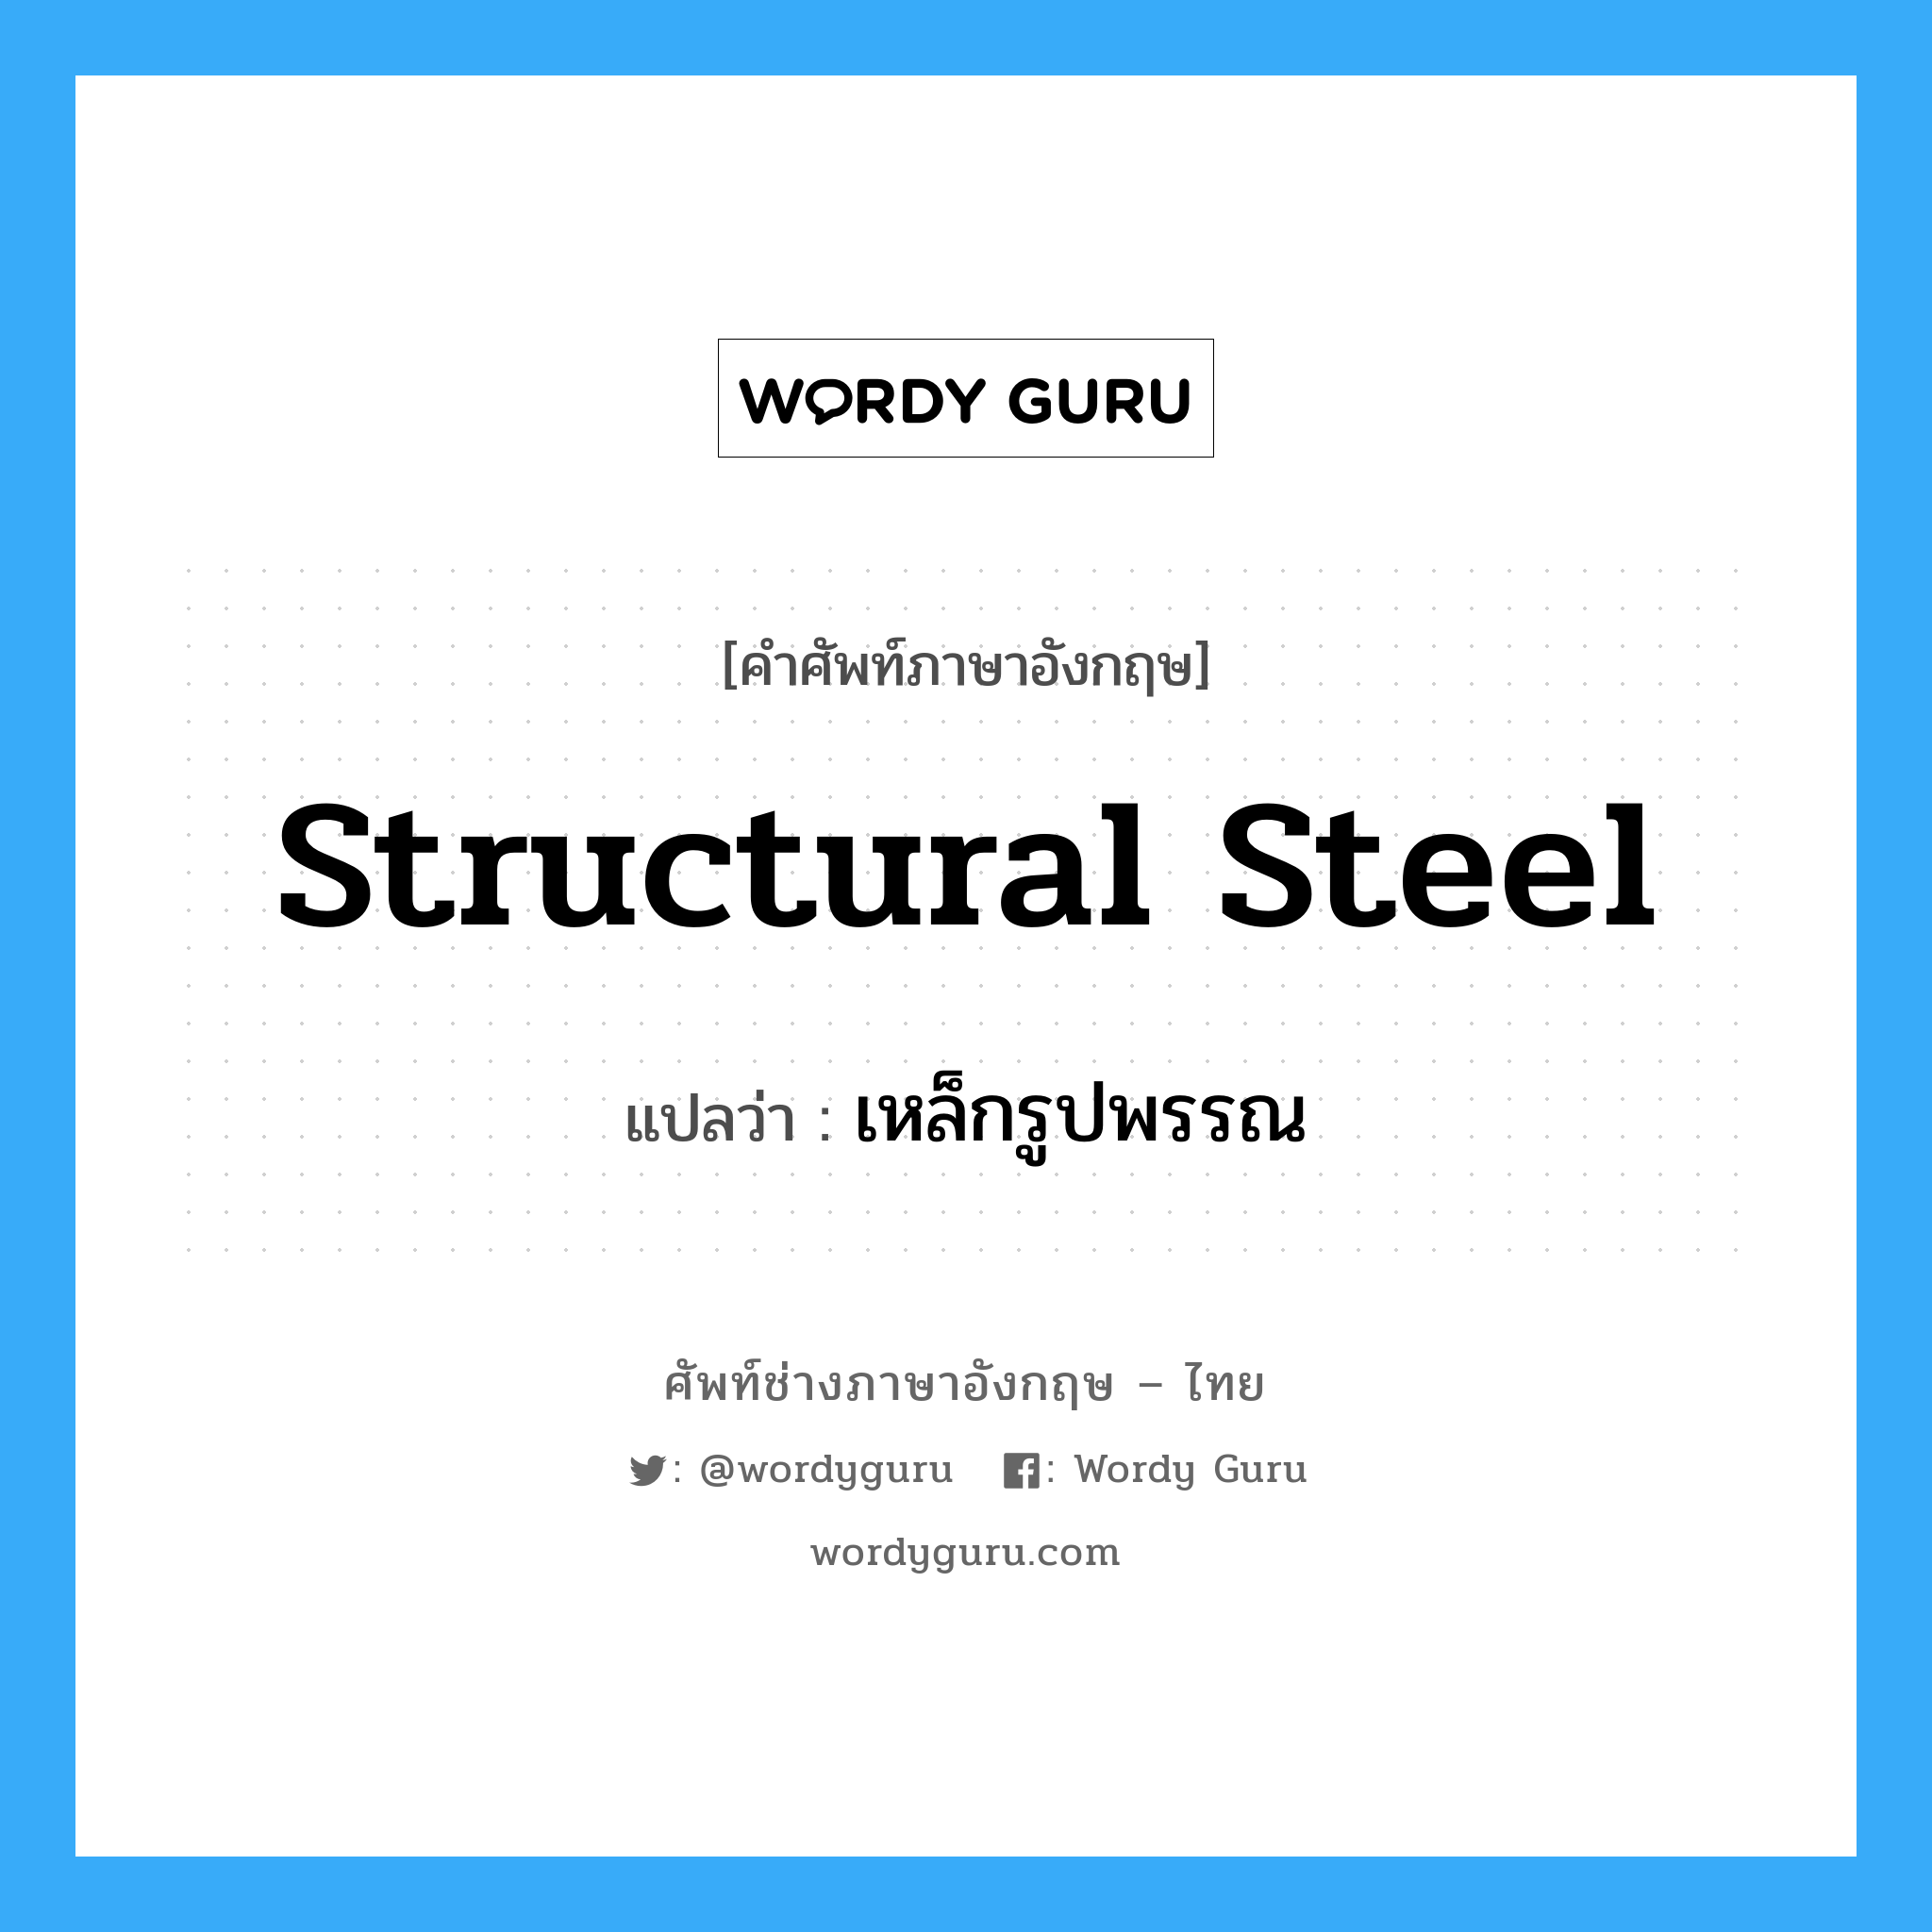 เหล็กรูปพรรณ ภาษาอังกฤษ?, คำศัพท์ช่างภาษาอังกฤษ - ไทย เหล็กรูปพรรณ คำศัพท์ภาษาอังกฤษ เหล็กรูปพรรณ แปลว่า structural steel